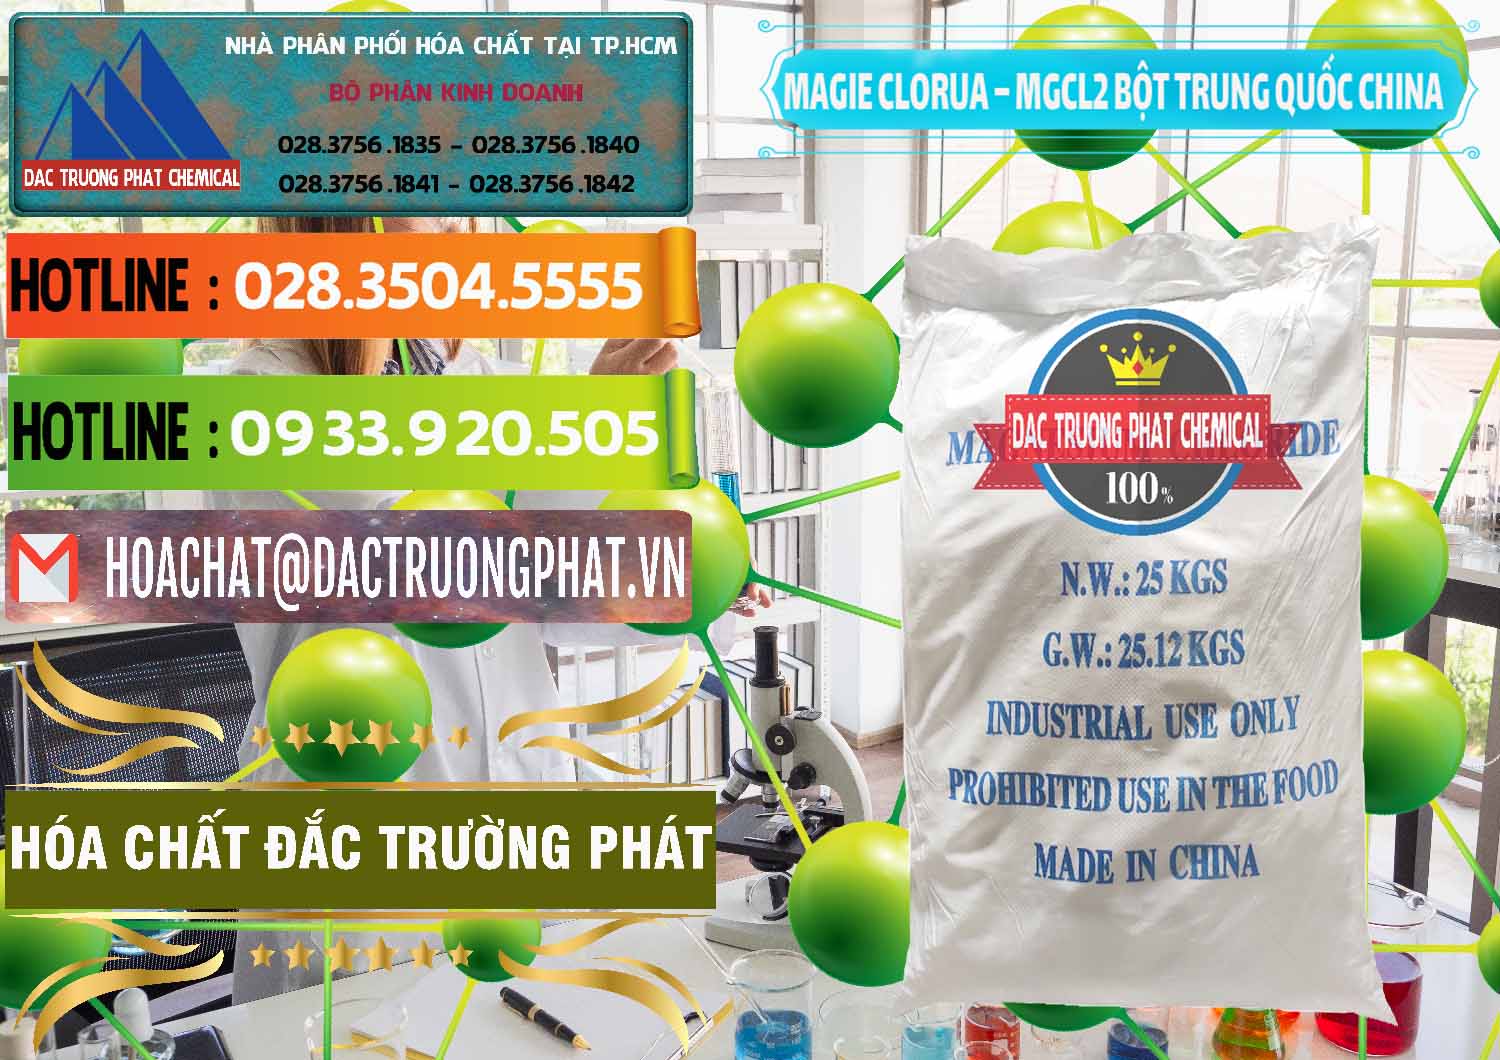 Đơn vị cung ứng & bán Magie Clorua – MGCL2 96% Dạng Bột Bao Chữ Xanh Trung Quốc China - 0207 - Đơn vị chuyên kinh doanh và phân phối hóa chất tại TP.HCM - cungcaphoachat.com.vn